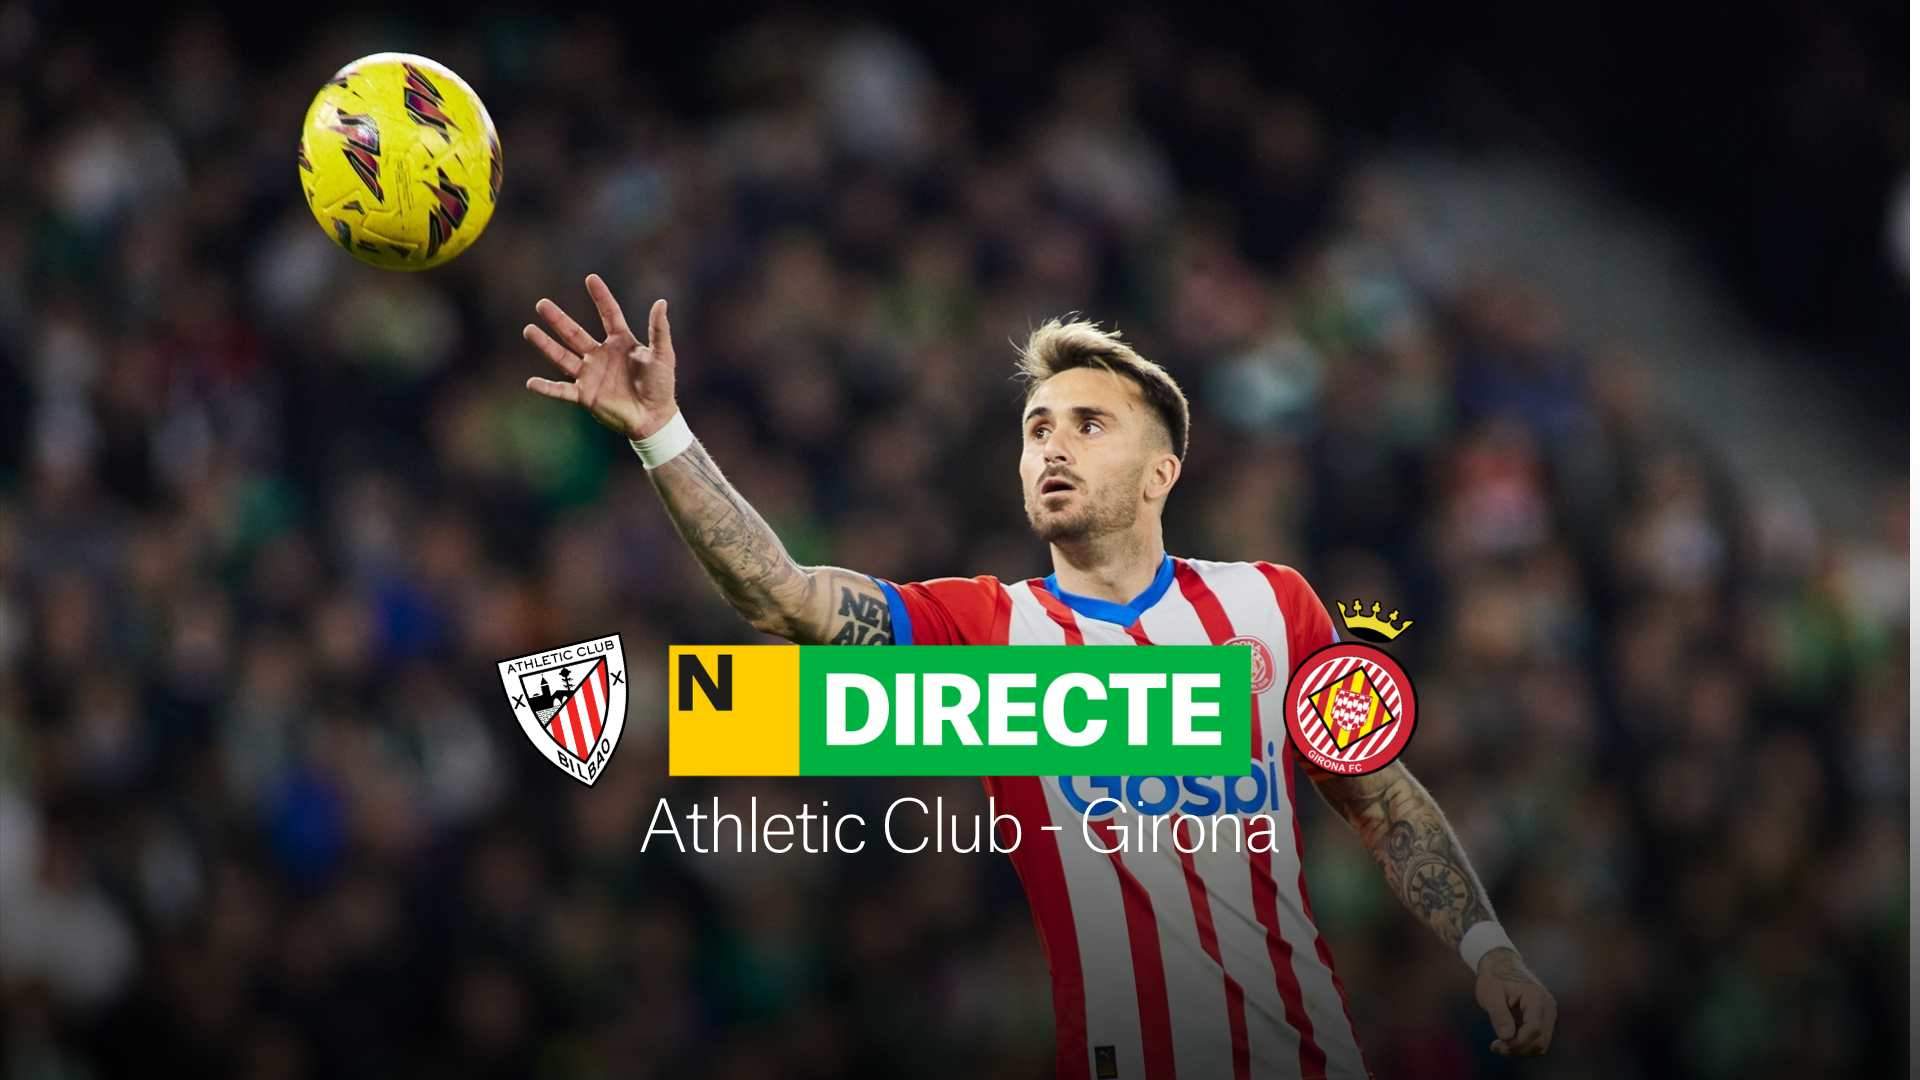 Athletic Club - Girona de LaLiga EA Sports, DIRECTO | Resultado, resumen y goles